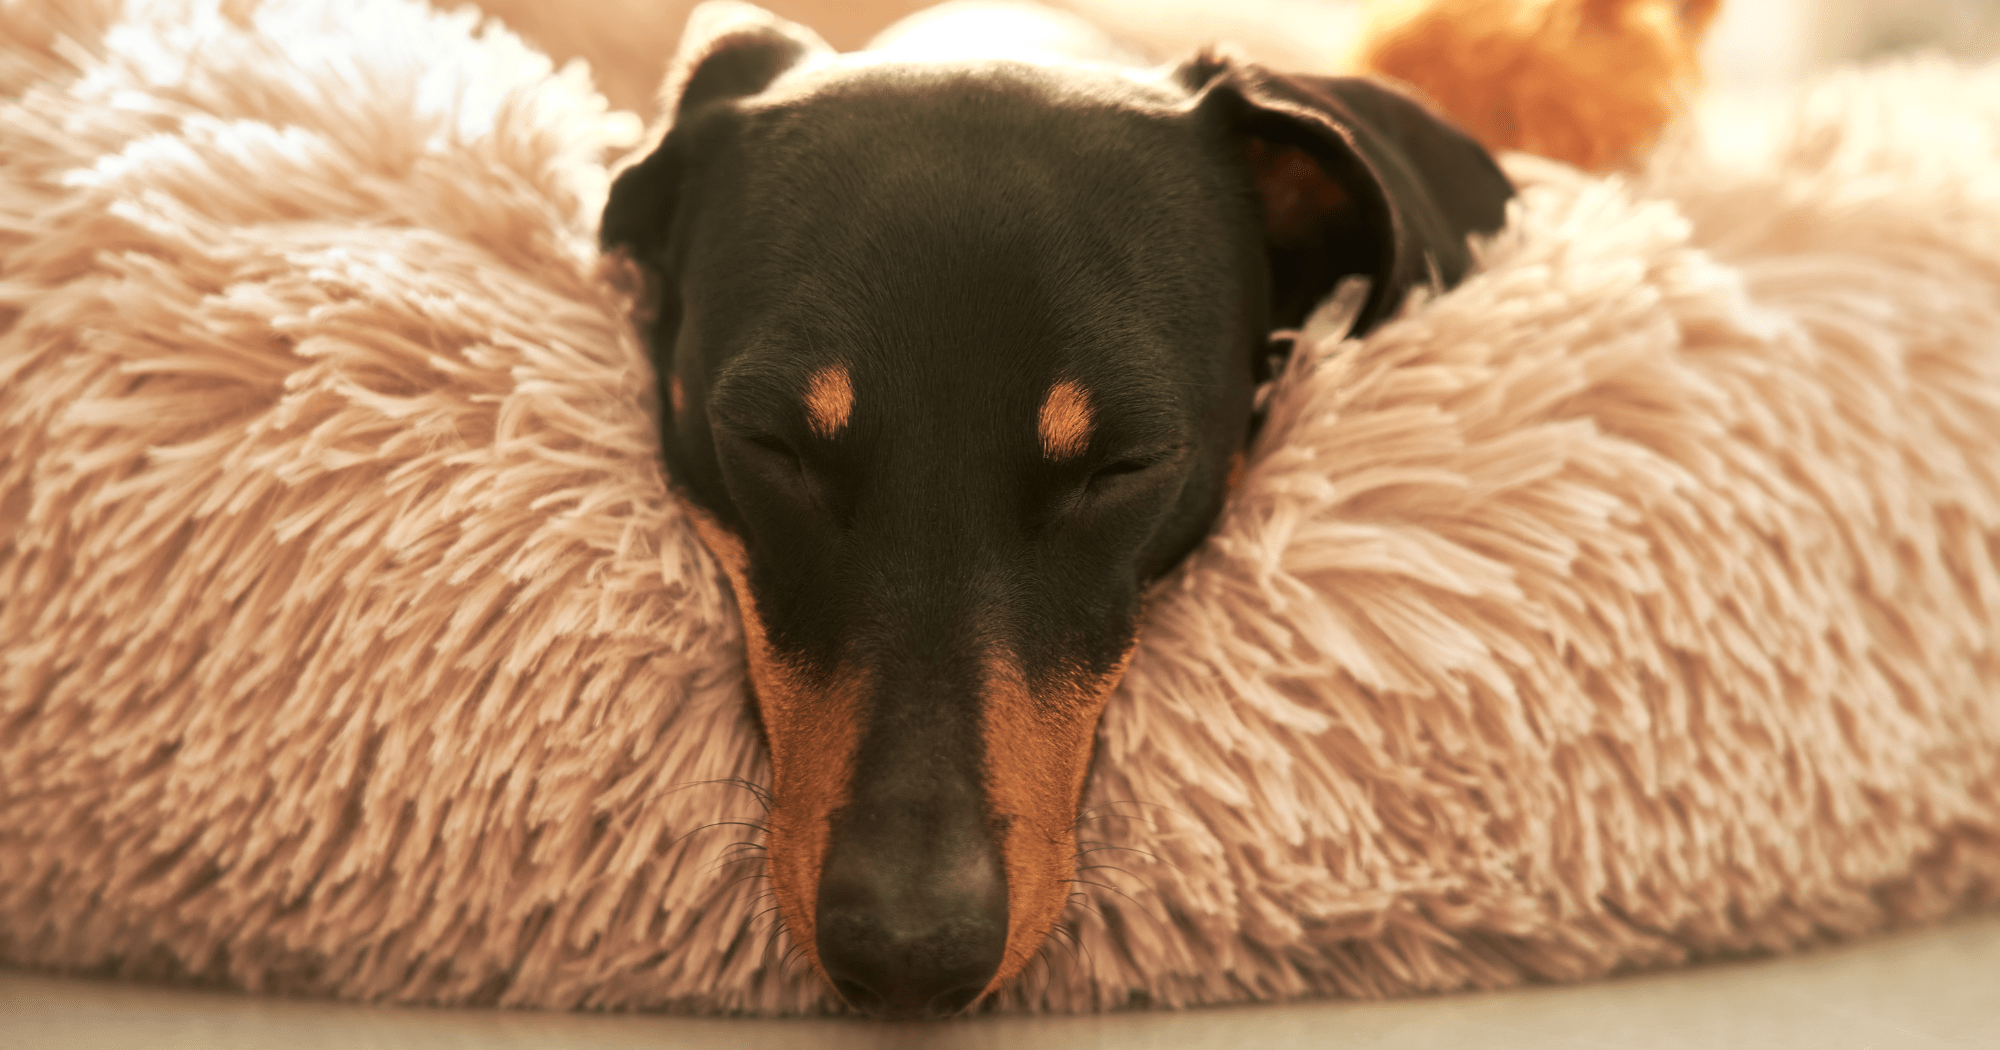 Migliori cucce invernali per cani: la guida completa